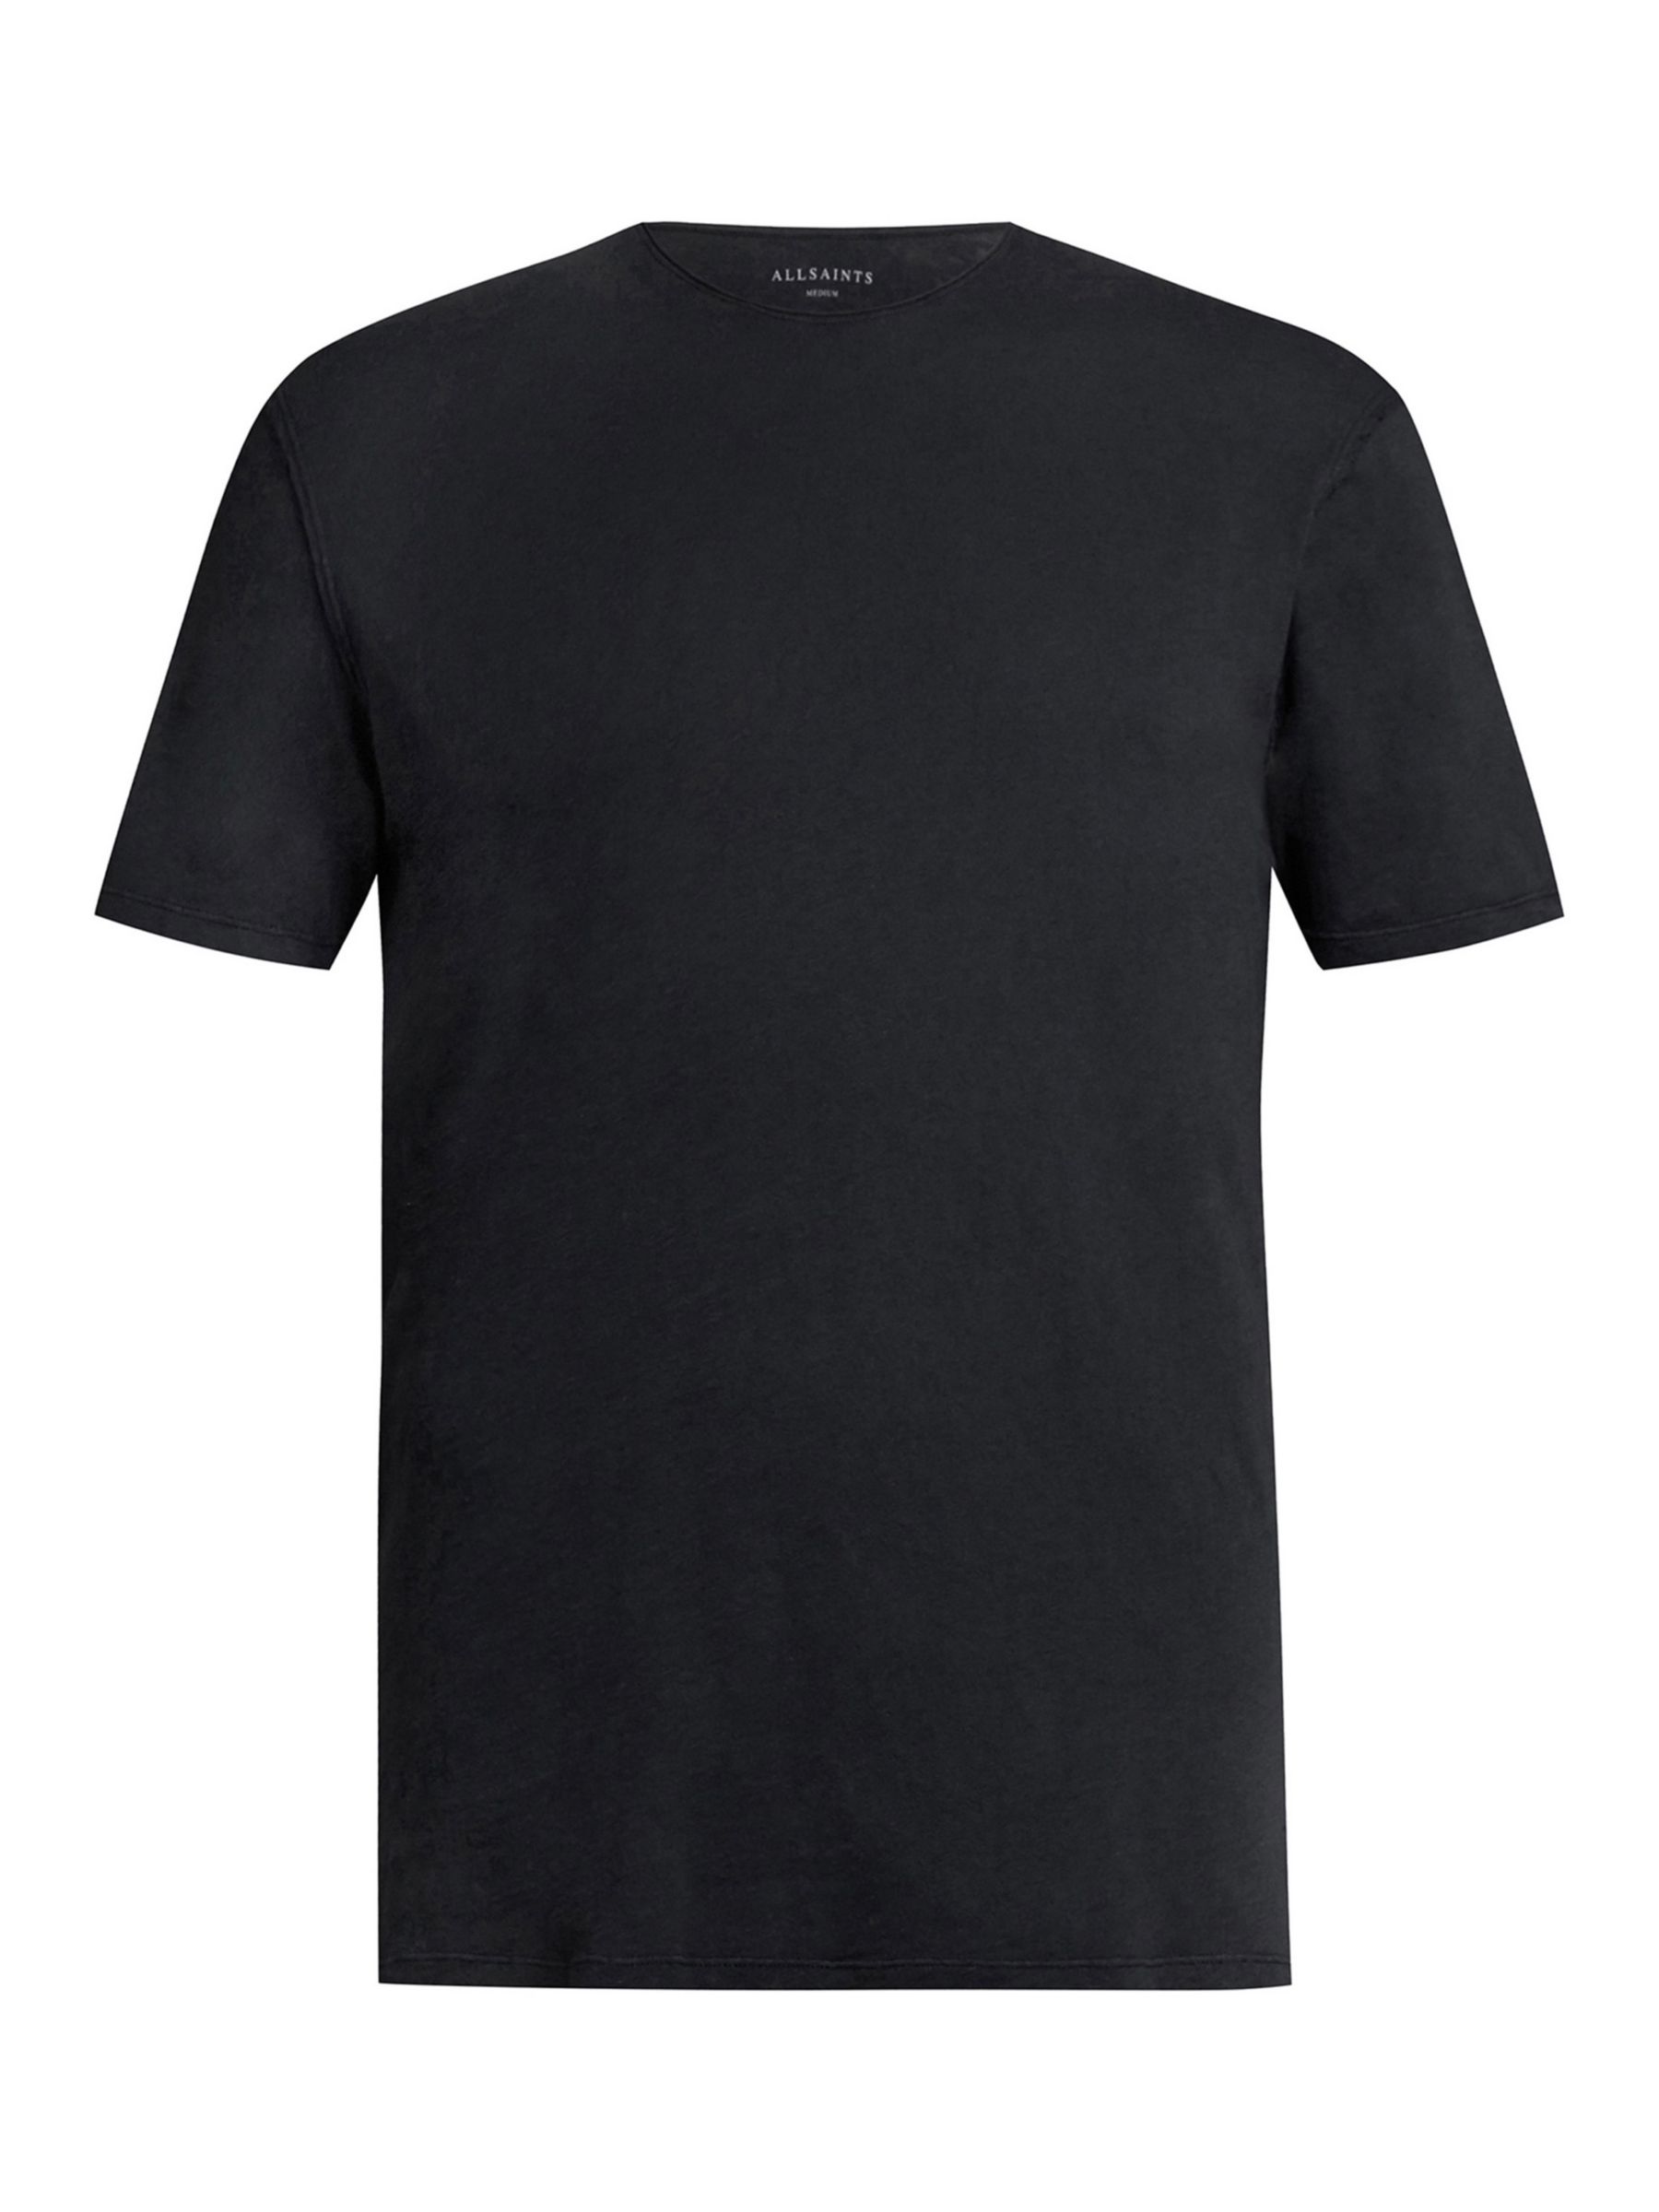 Buy AllSaints Figure Crew T-Shirt Online at johnlewis.com